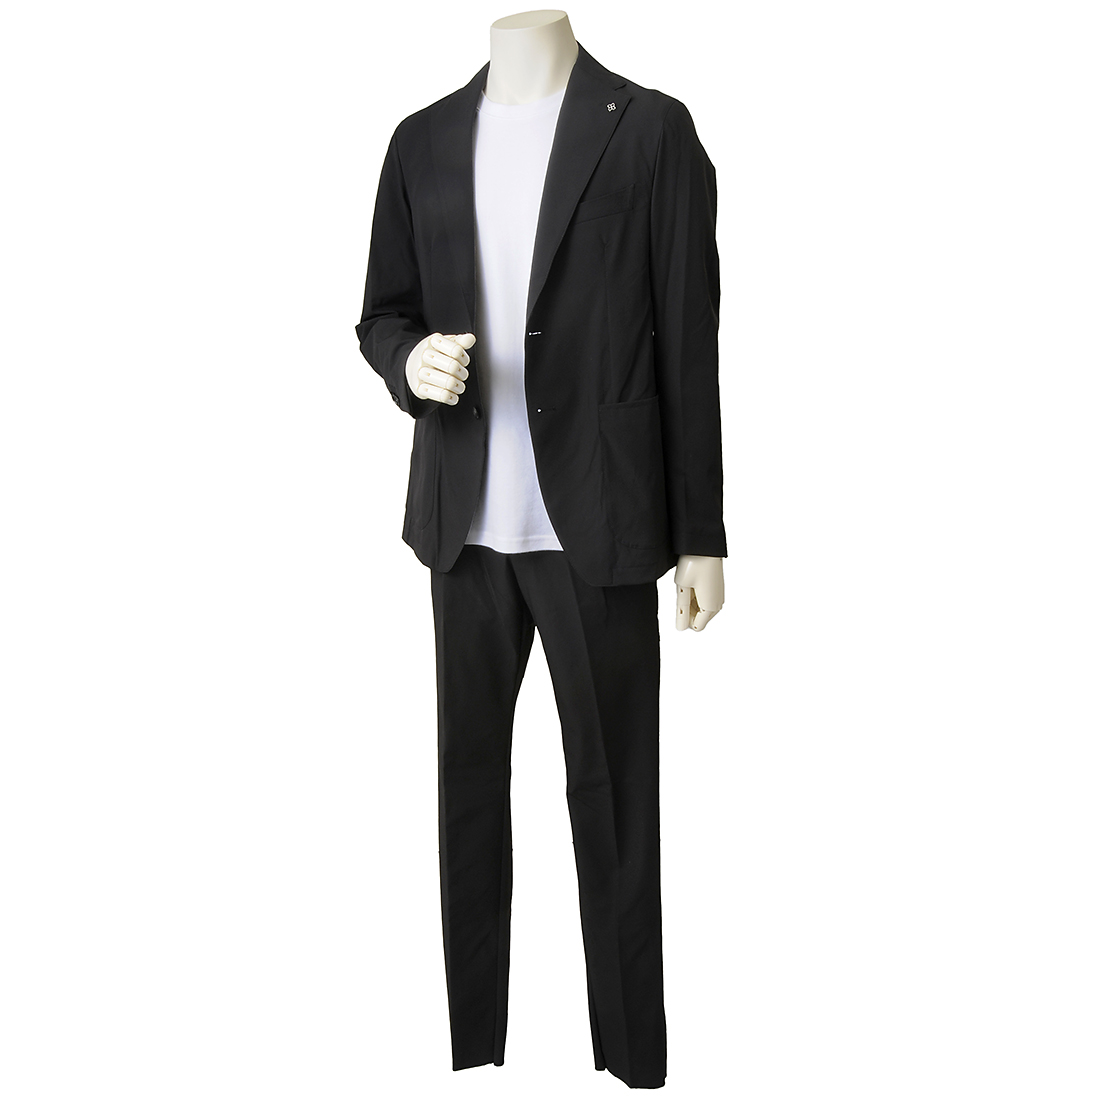 TAGLIATORE Tagliatore suit men's black 880007 N1138